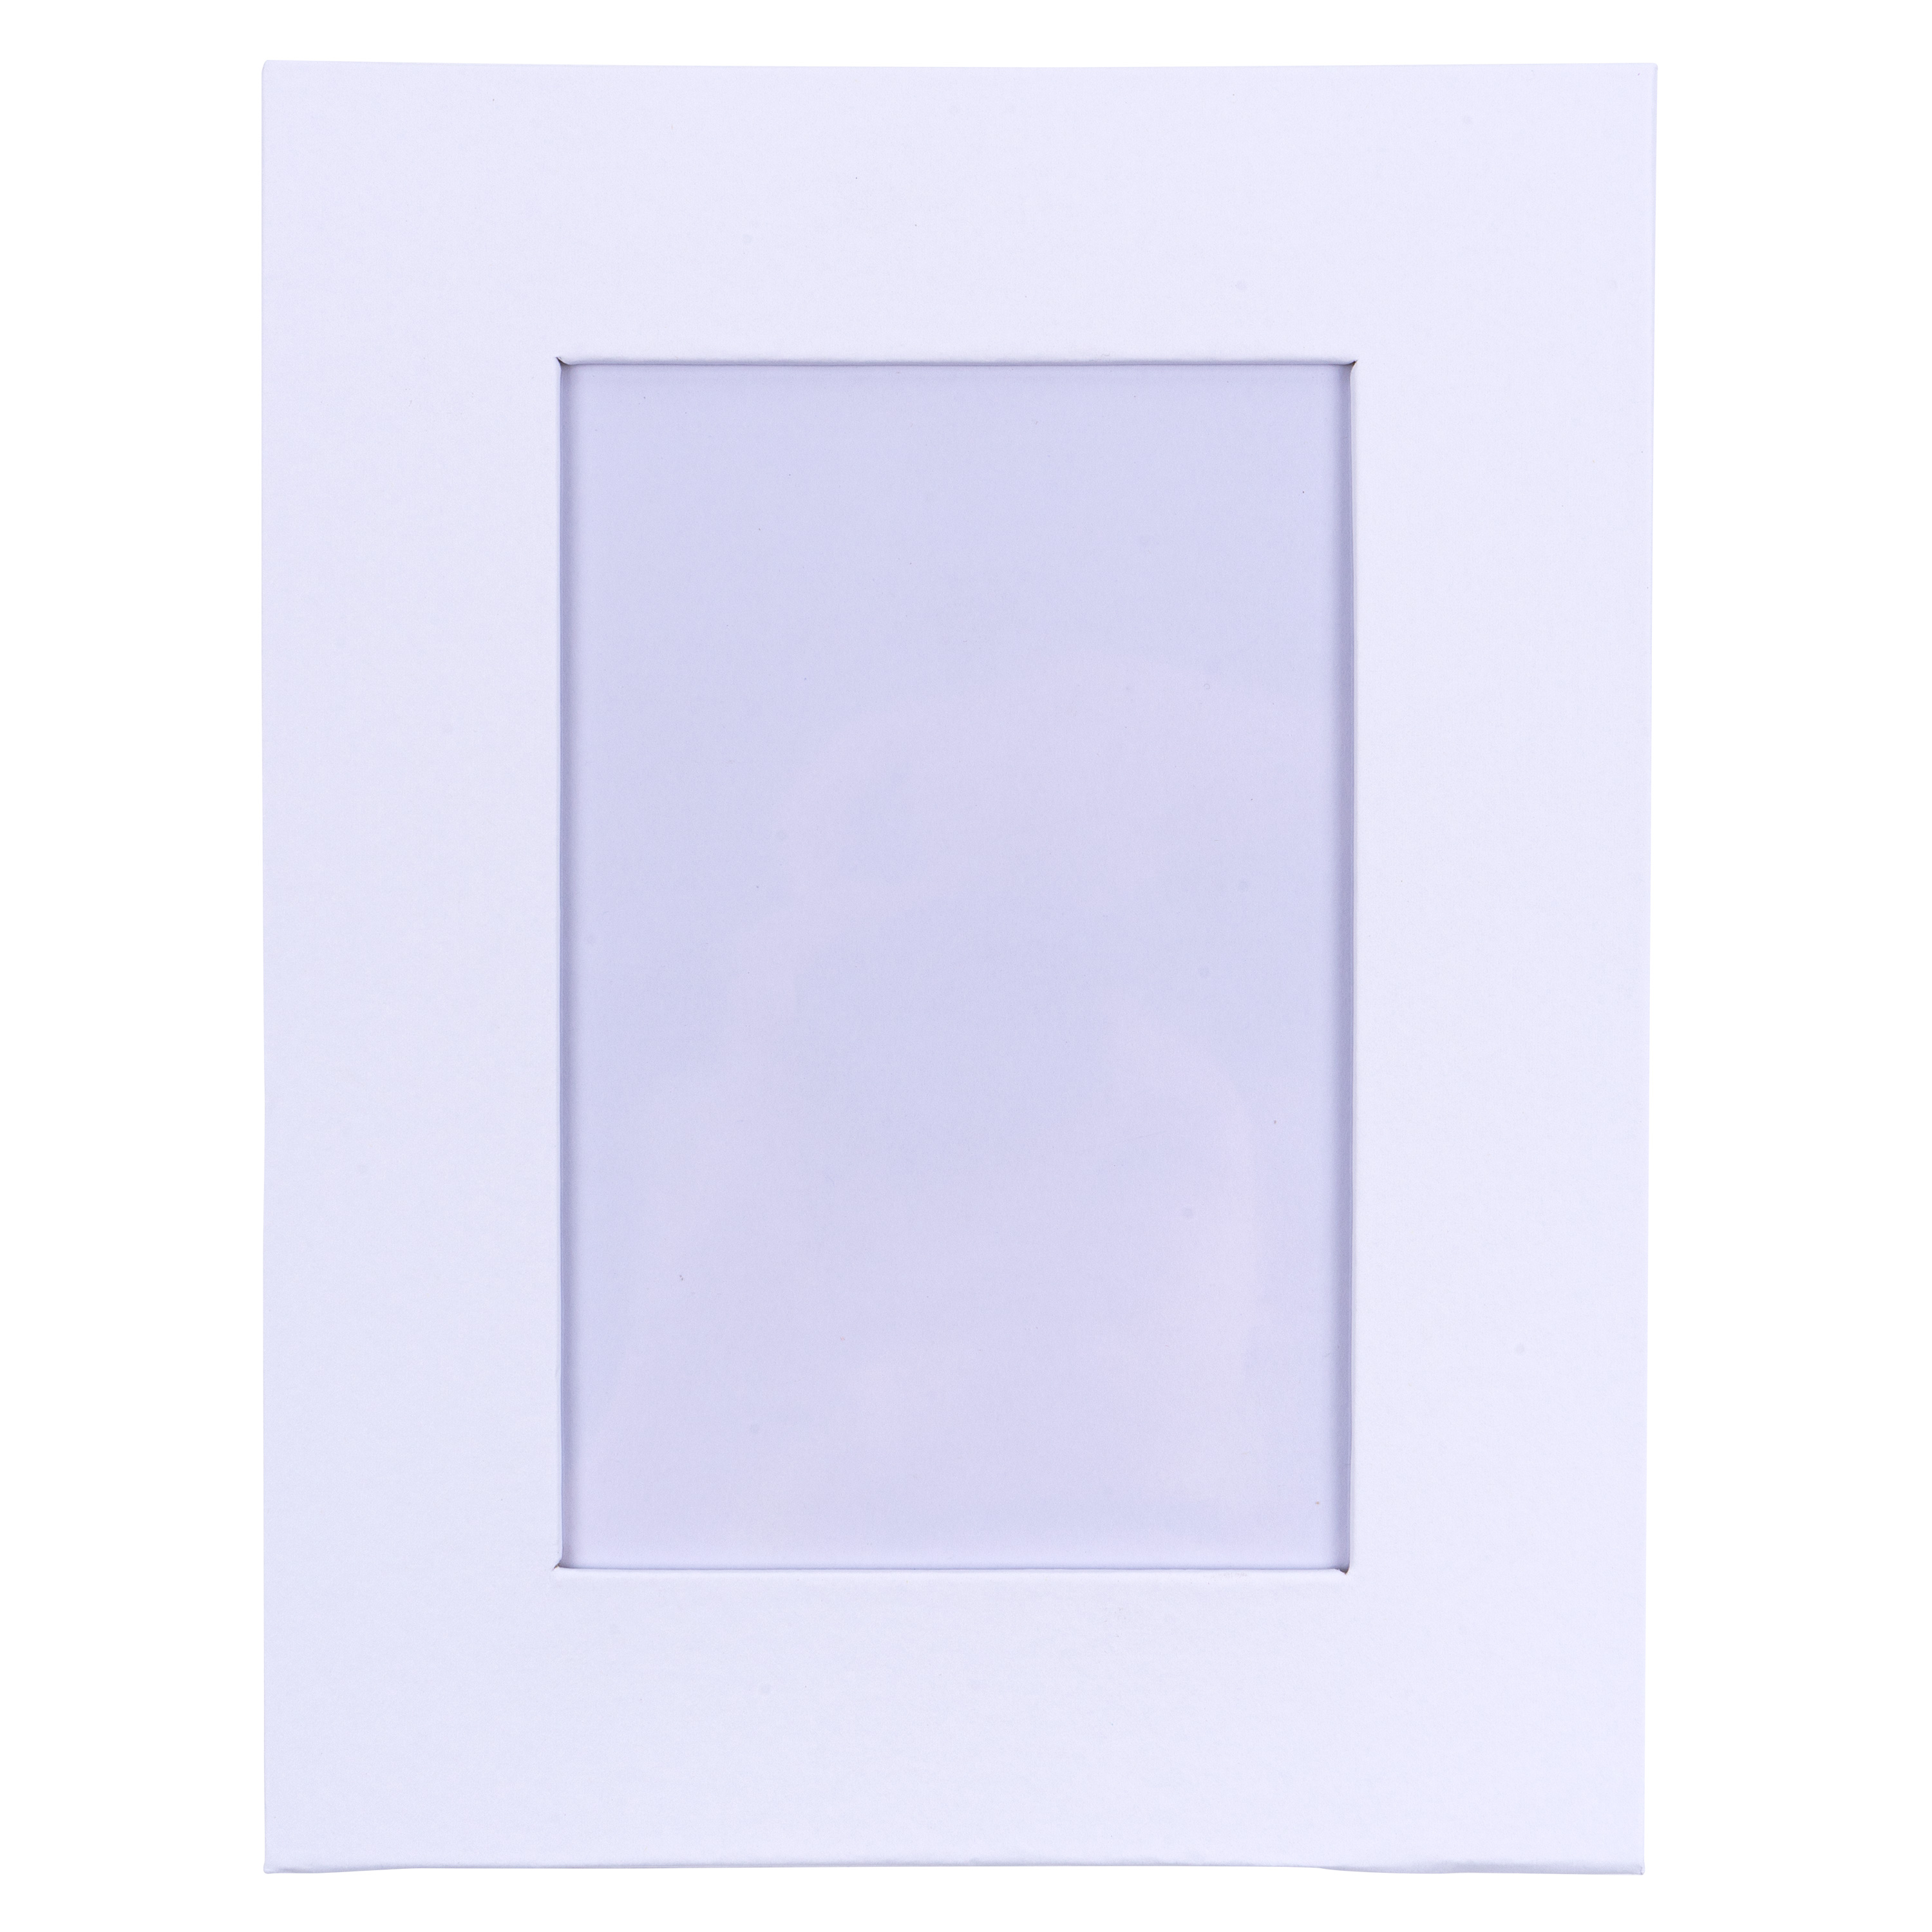 Bilderrahmen aus Pappe 'rechteckig' blanko weiß